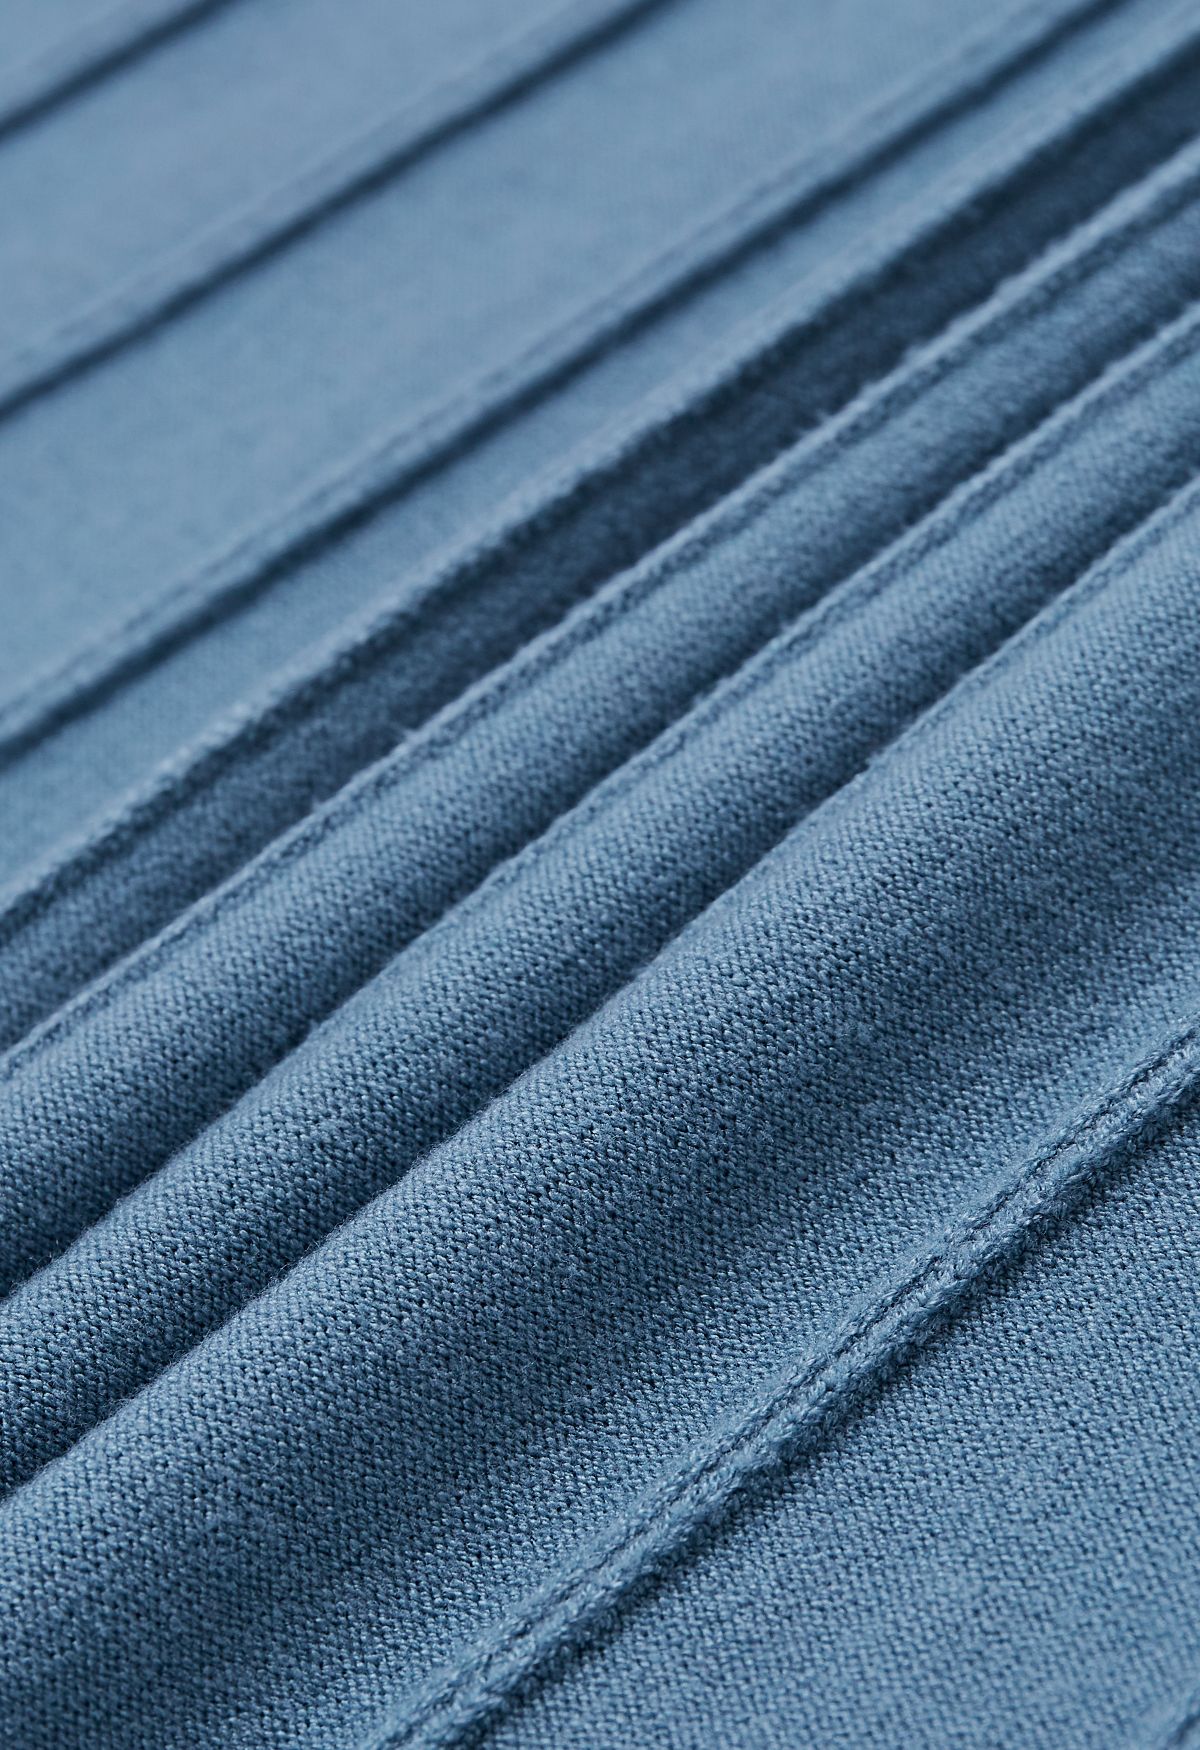 Plissee-Strick-Twinset-Kleid mit Stehkragen in Blaugrün